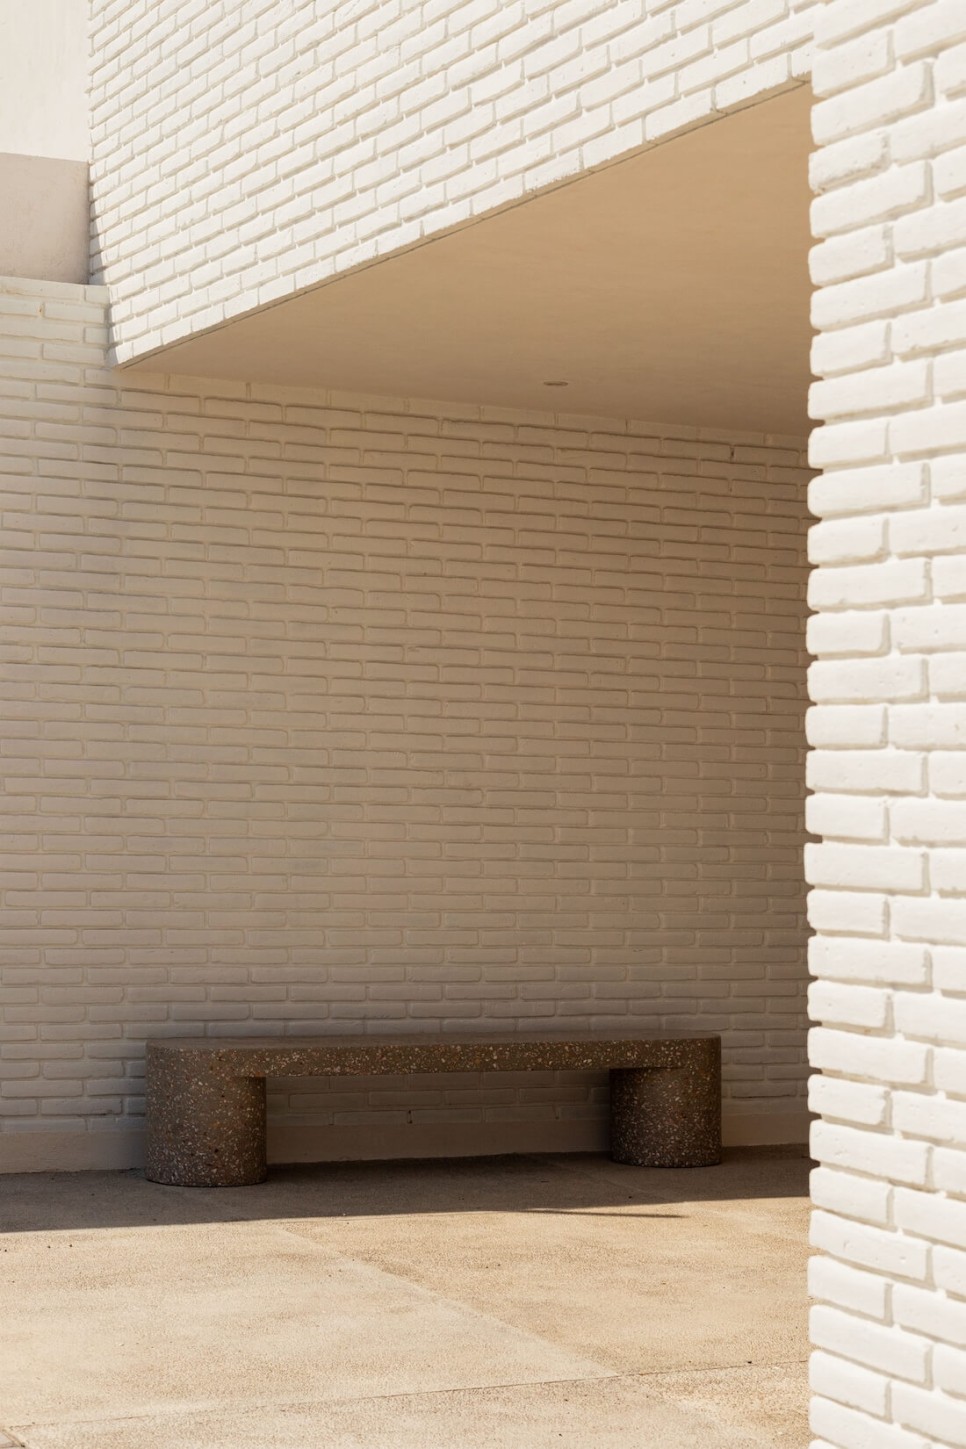 라이트 박스! 중정과 천창으로 쾌적한 주거환경을 구현한 테라스하우스, Casa Cholula by DCTA